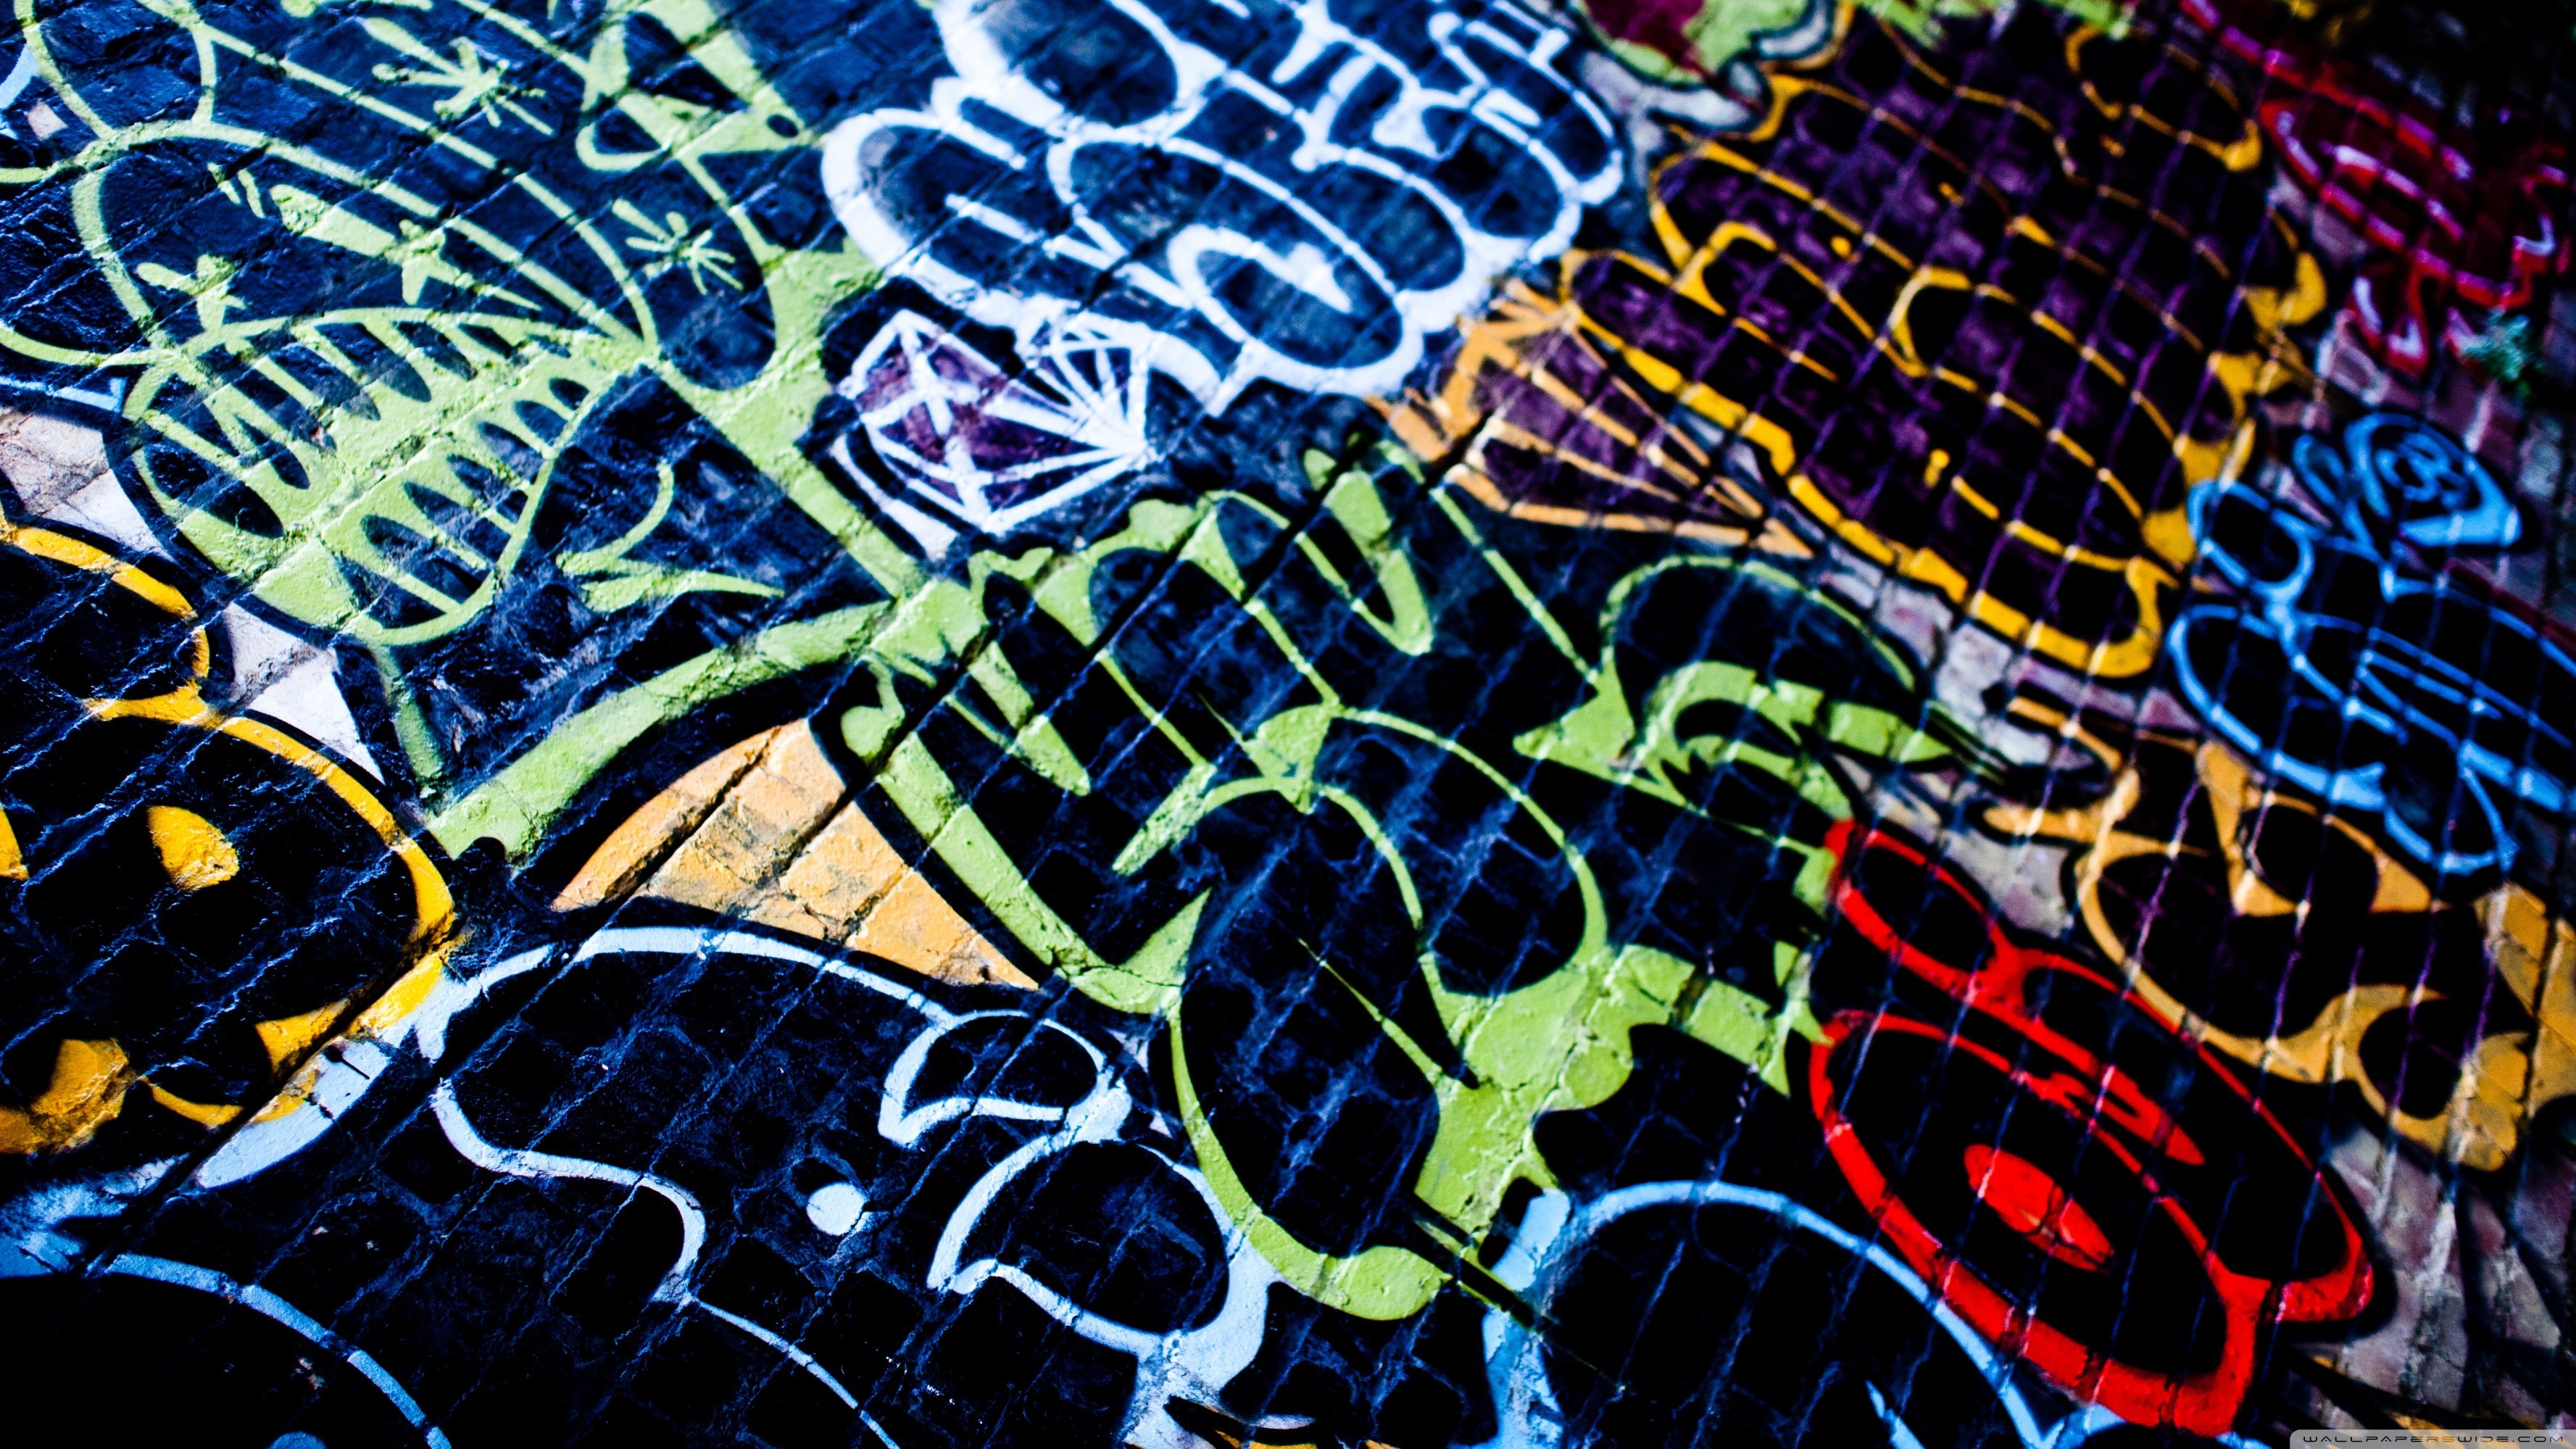 3554x1999 2560x1440 Abstract Graffiti D Wallpaper Awesome Street Art Desktop .